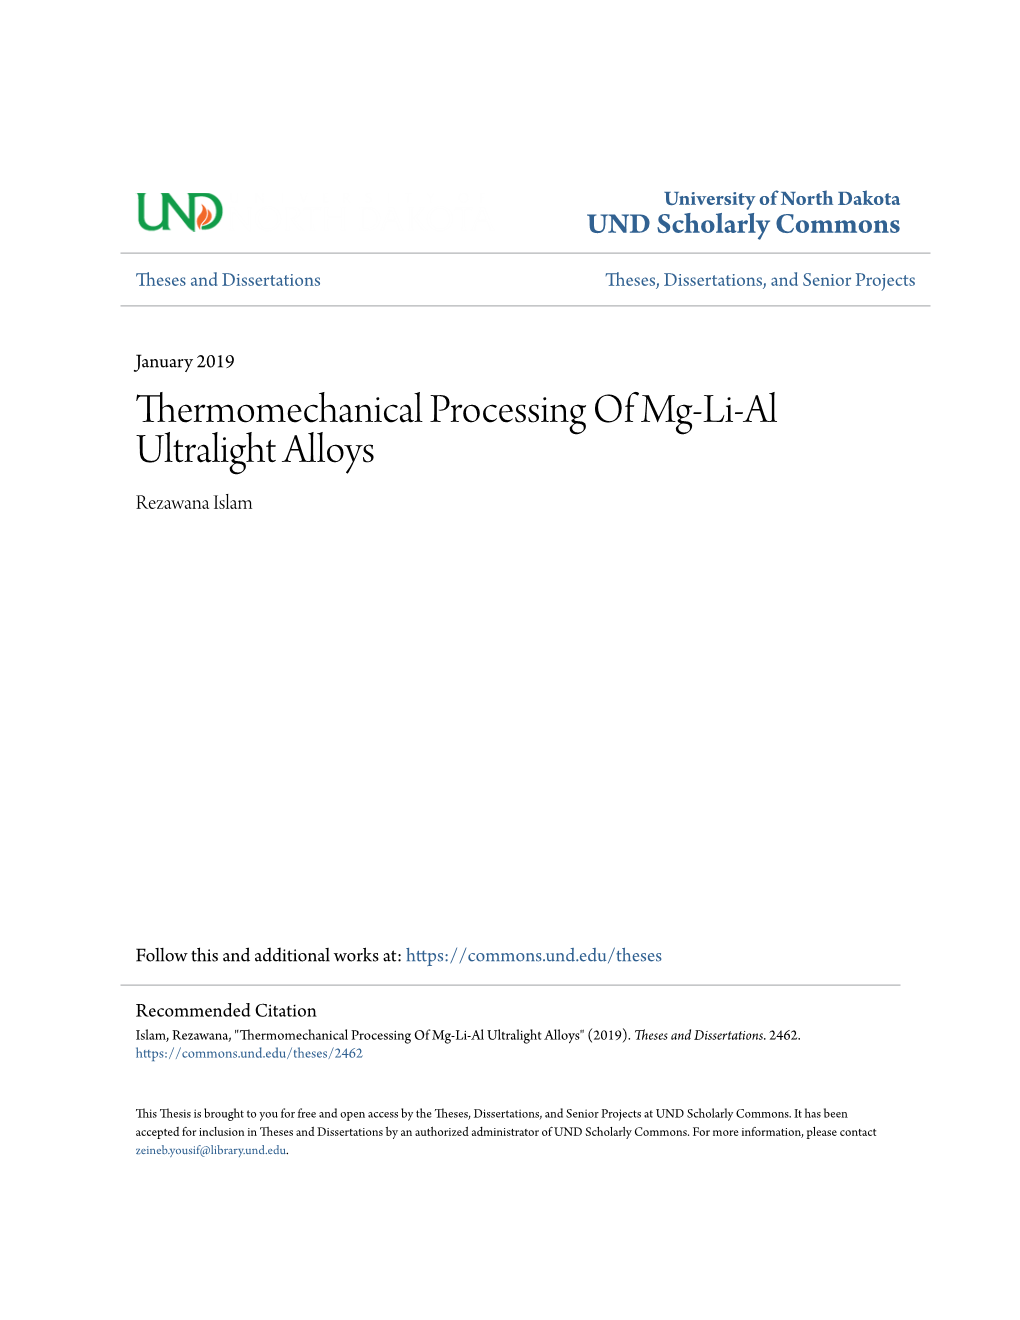 Thermomechanical Processing of Mg-Li-Al Ultralight Alloys Rezawana Islam